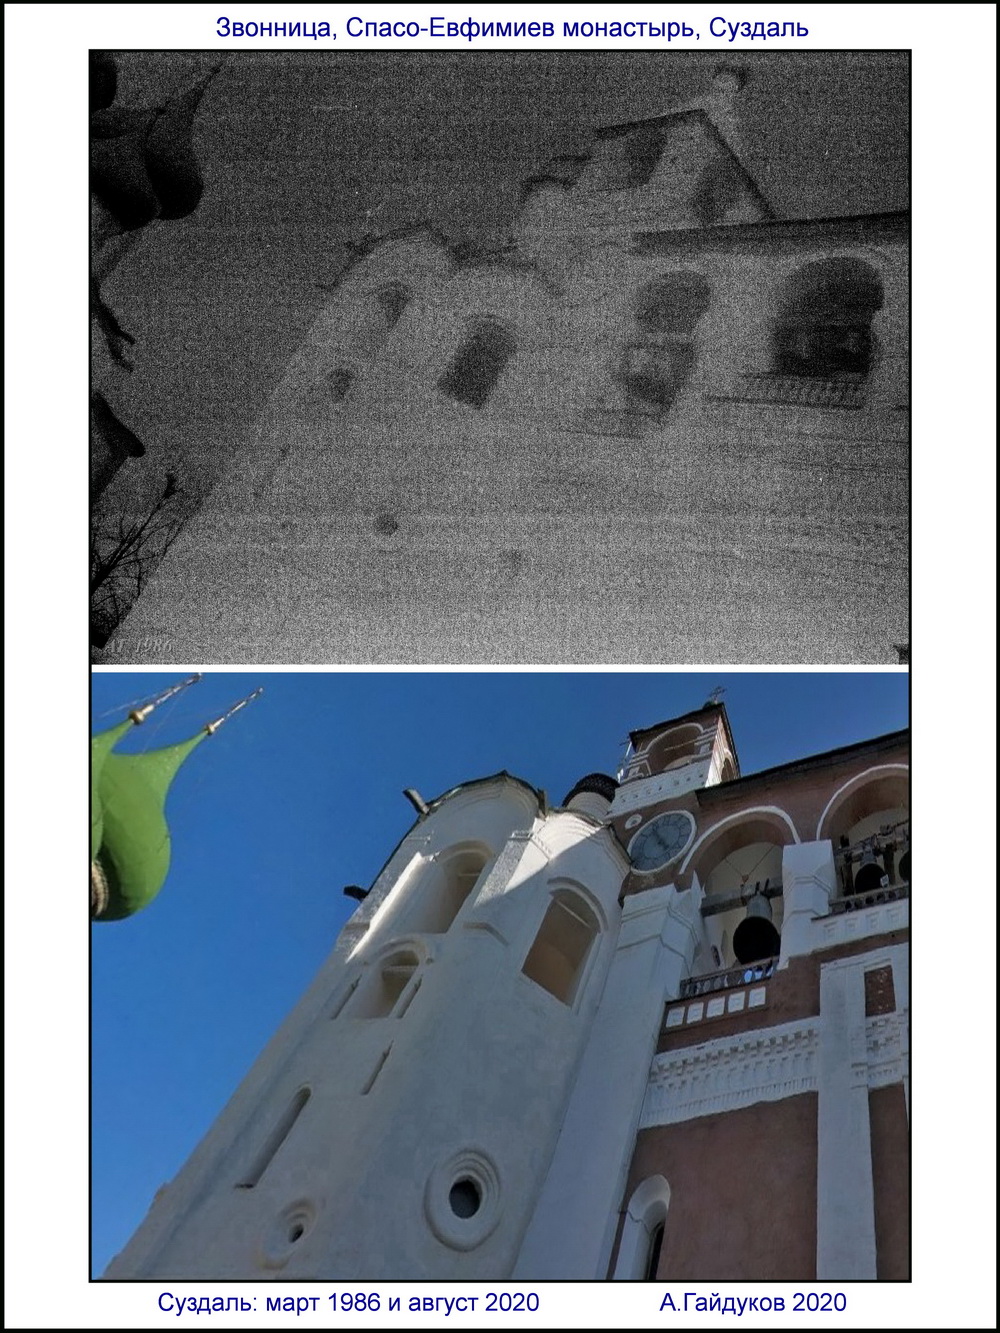 Два взгляда на Суздаль с перерывом в треть века 1986 и 2020  Звонница Спасо-Евфимиева монастыря 